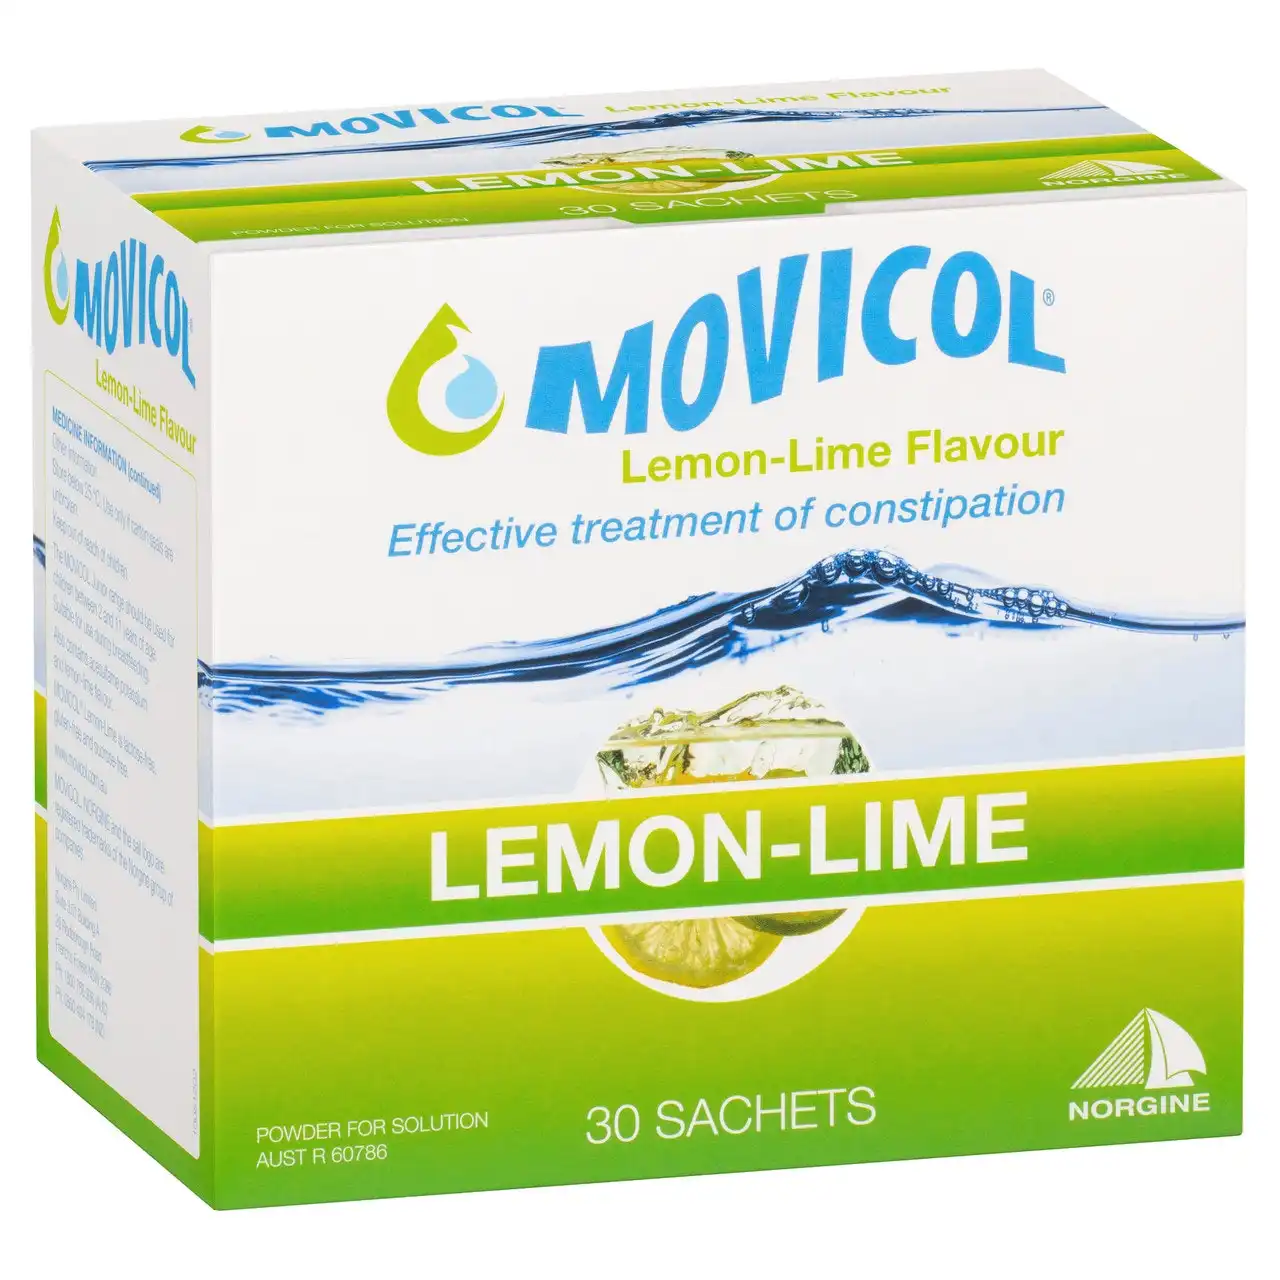 MOVICOL(r) Lemon Lime Flavour